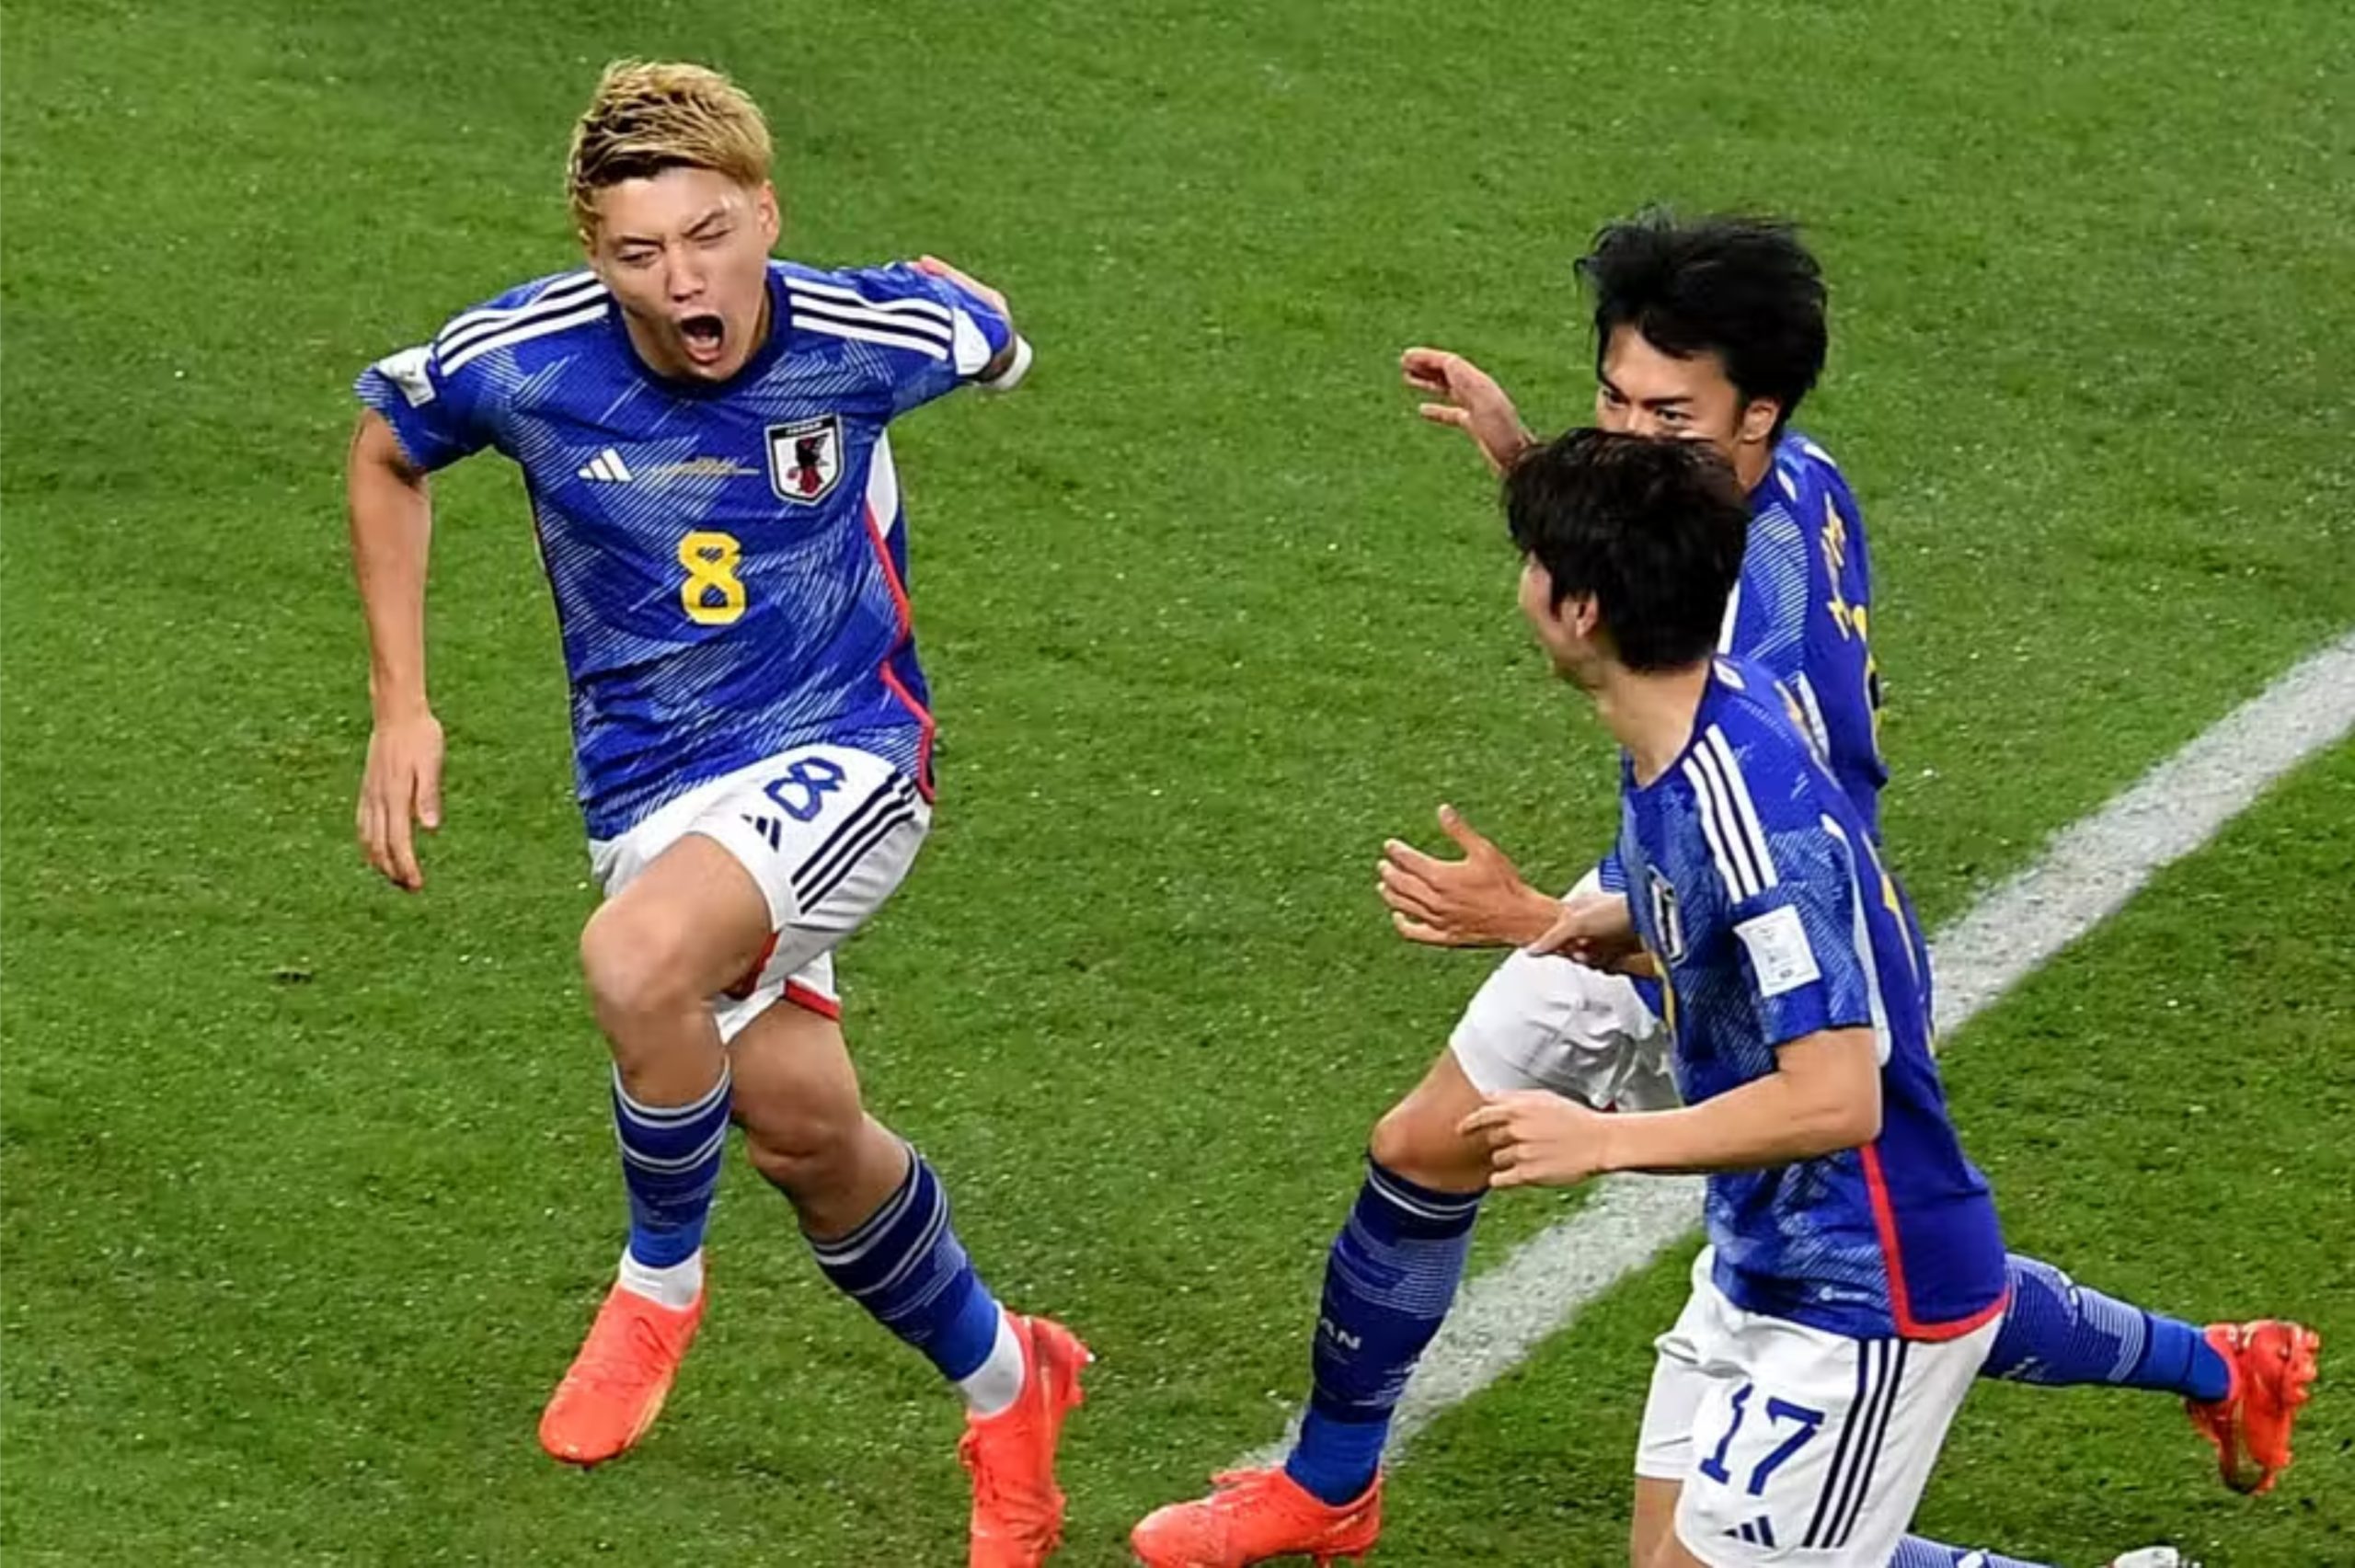 कतार विश्वकप : जापान र स्पेन नकआउट चरणमा, जर्मनी बाहिरियो